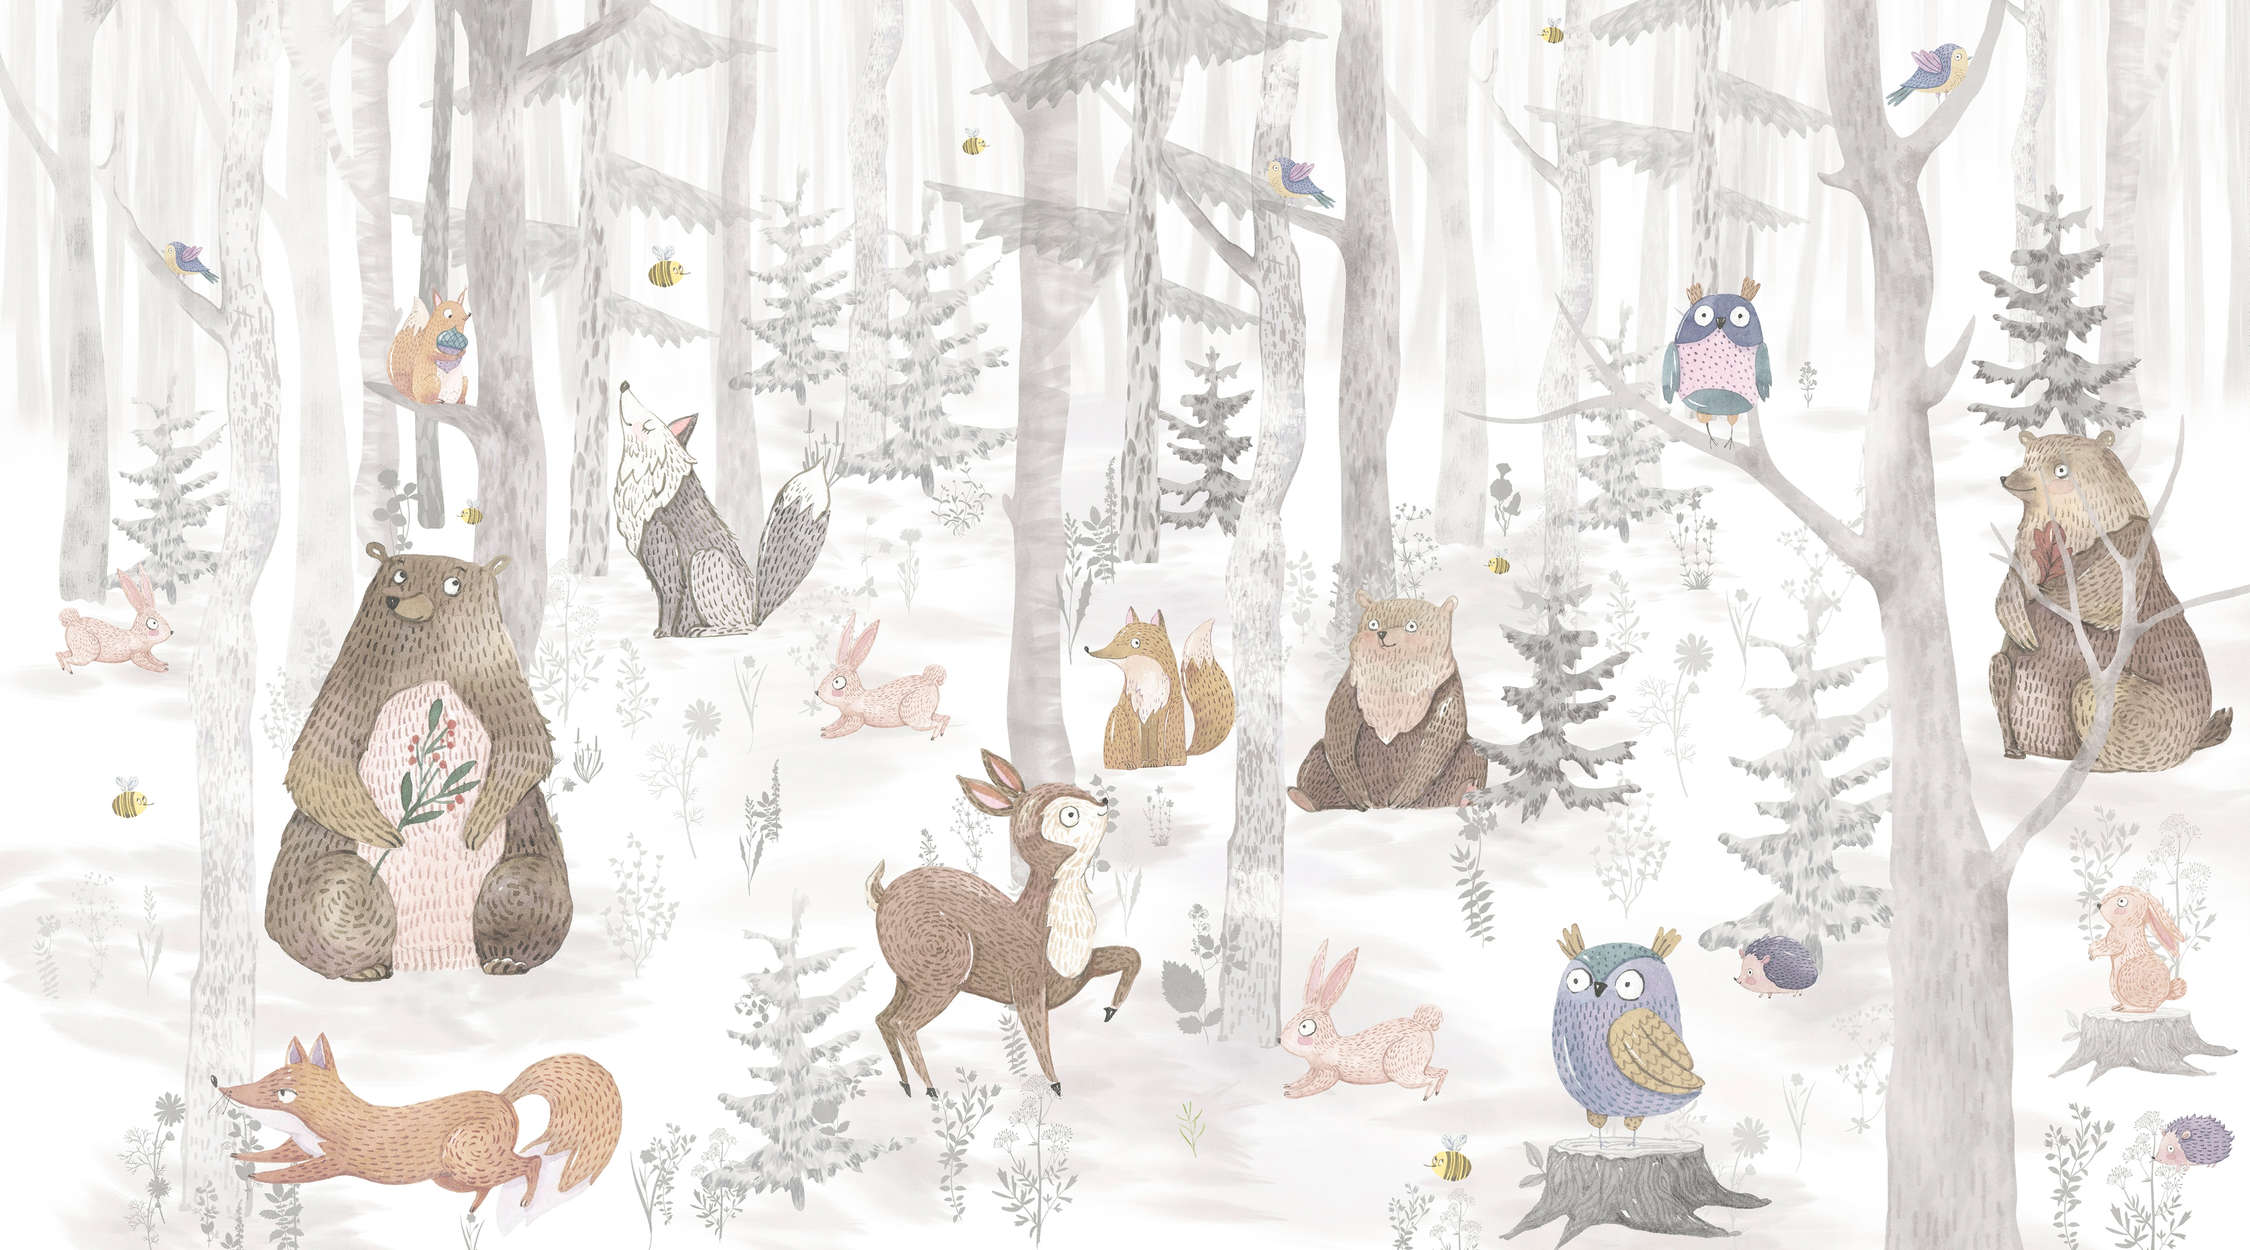             papiers peints à impression numérique forêt enchantée avec animaux - intissé lisse & légèrement brillant
        